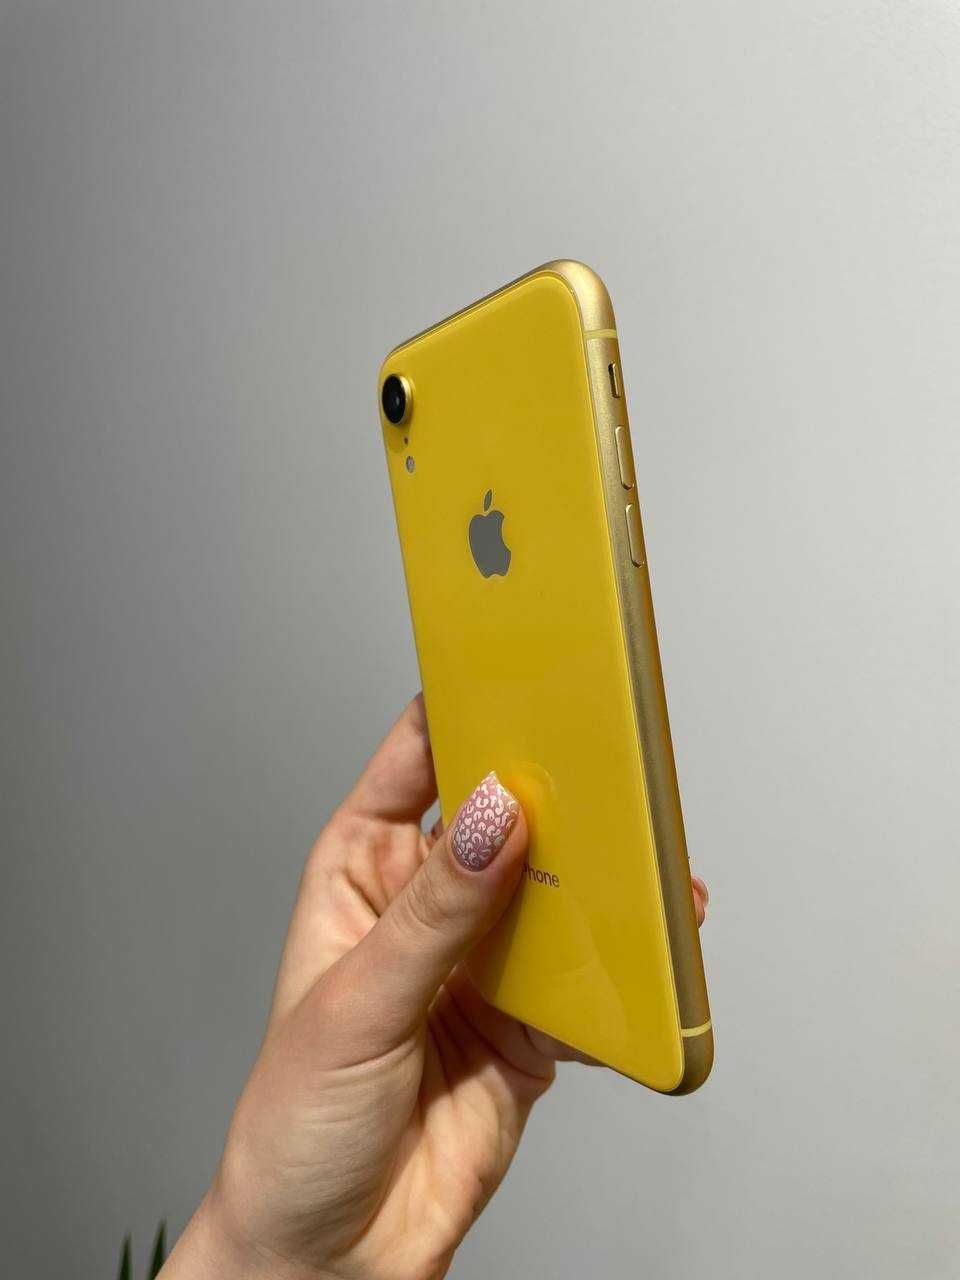 Б/У iPhone XR 128GB Yellow - Розтермінування